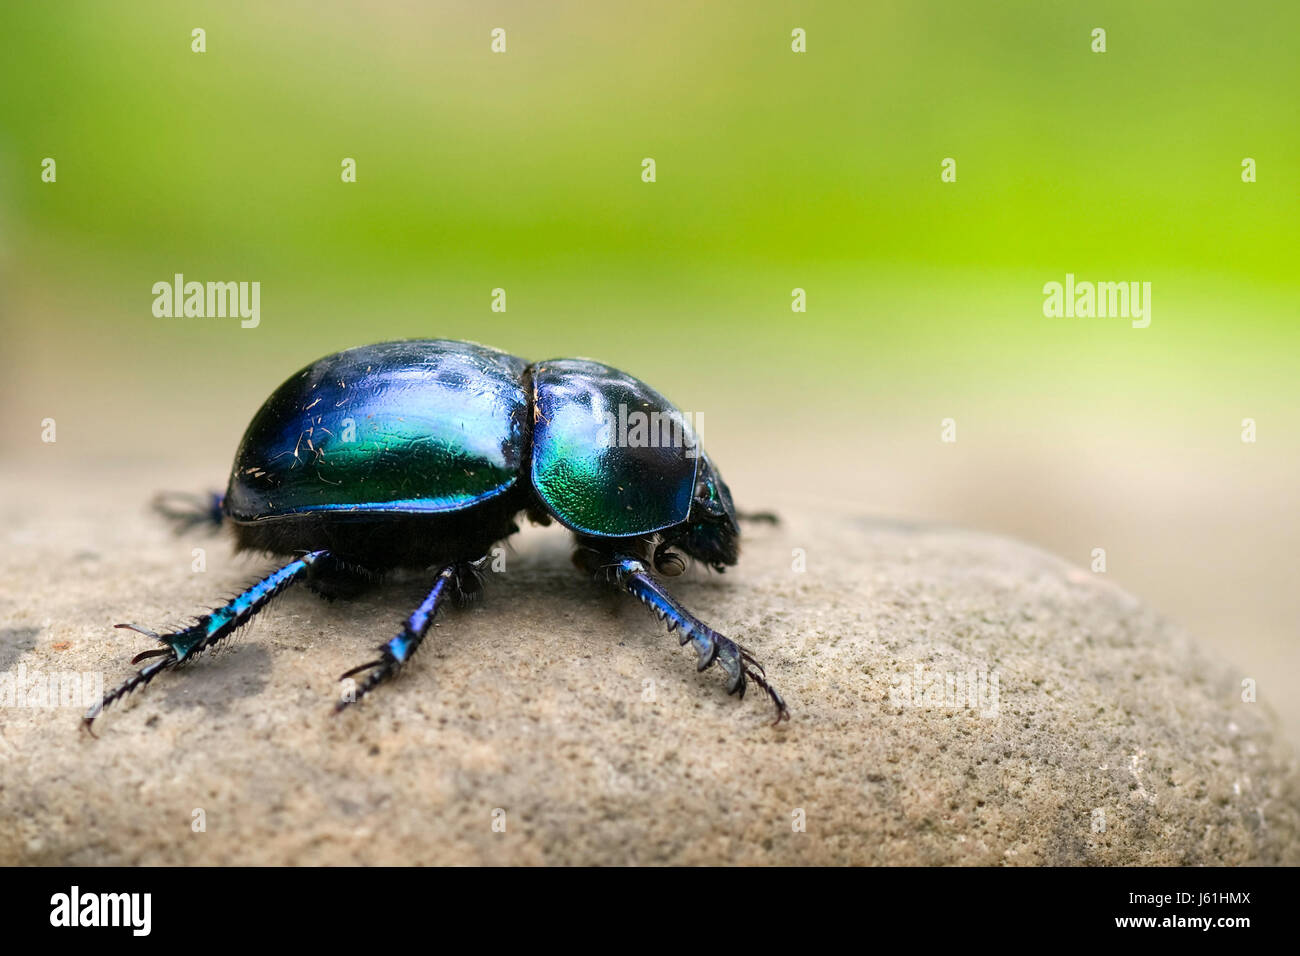 Animale blu beetle insetto brillante lucido metallico scarabeo sterco macro close-up Foto Stock